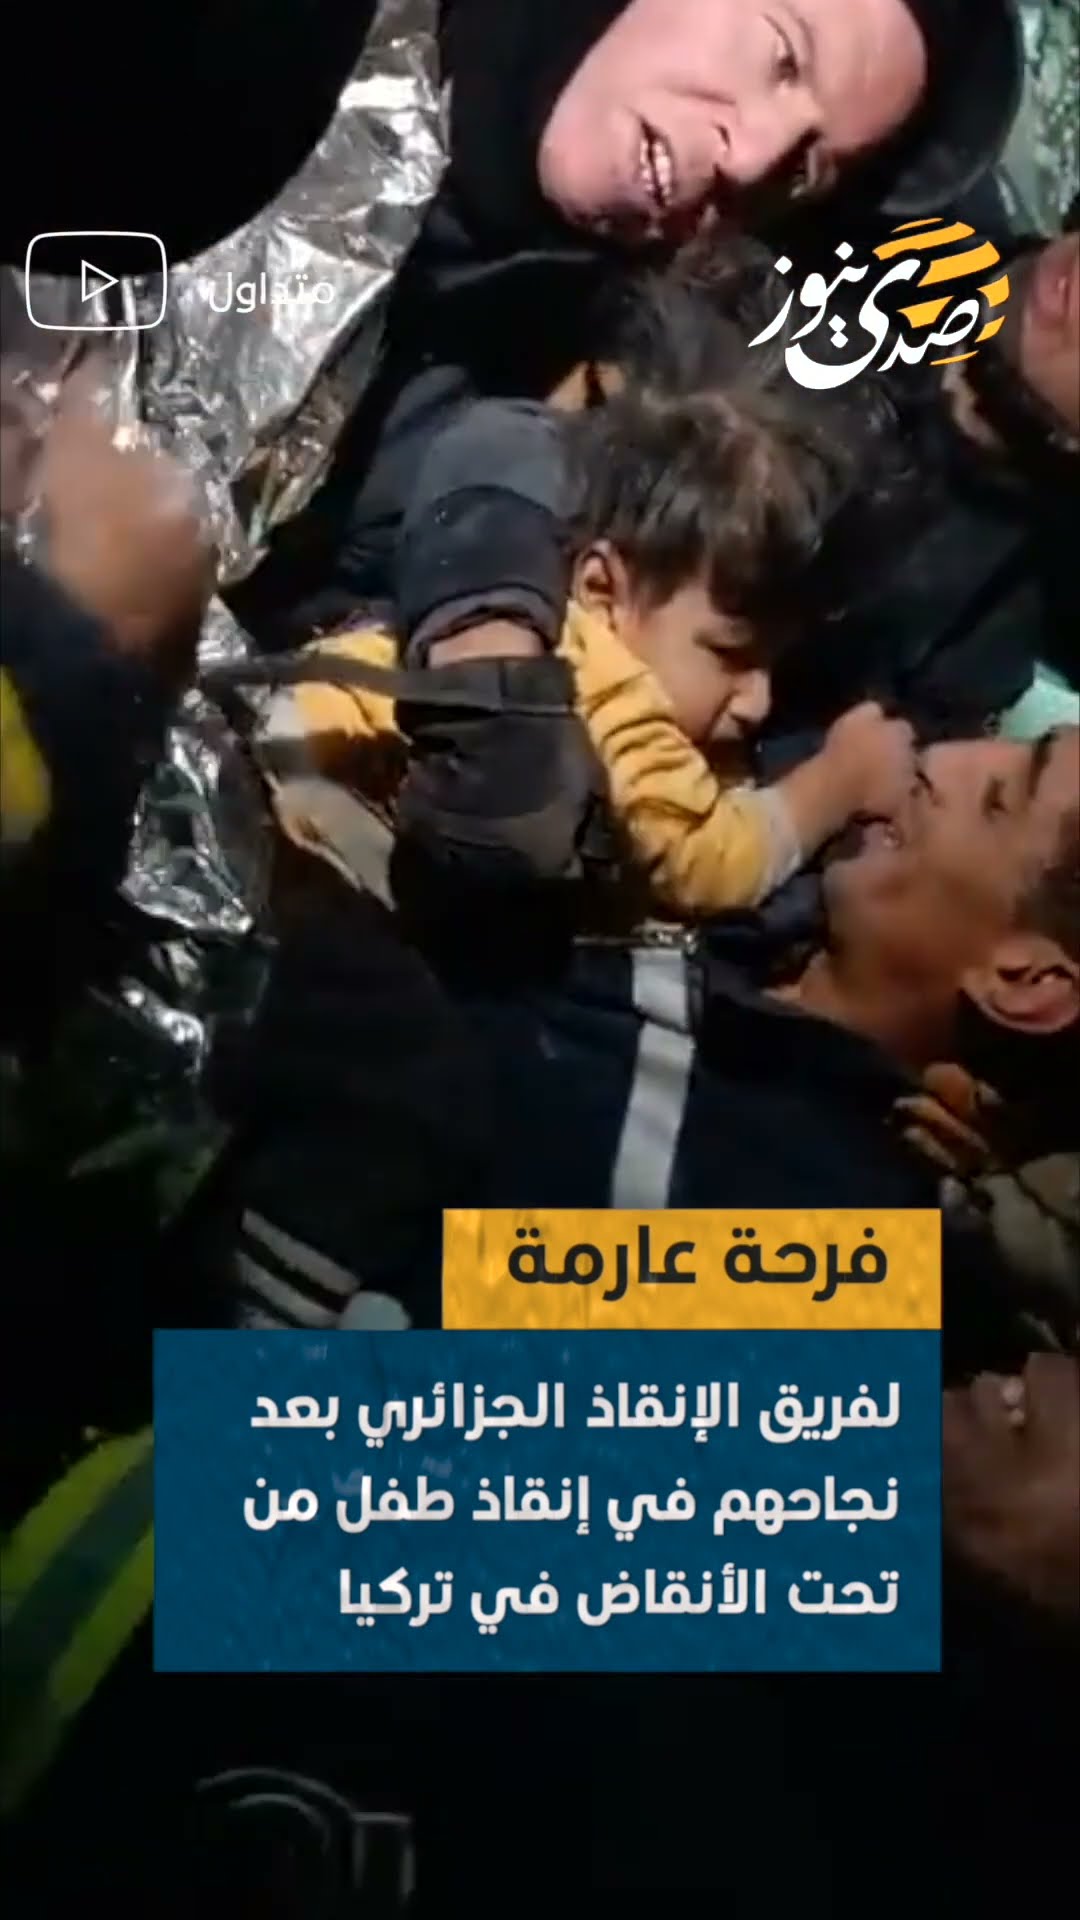 فرحة عارمة لفريق الإنقاذ الجزائري بعد نجاحهم في إنقاذ طفل من تحت الأنقاض في تركيا #trending